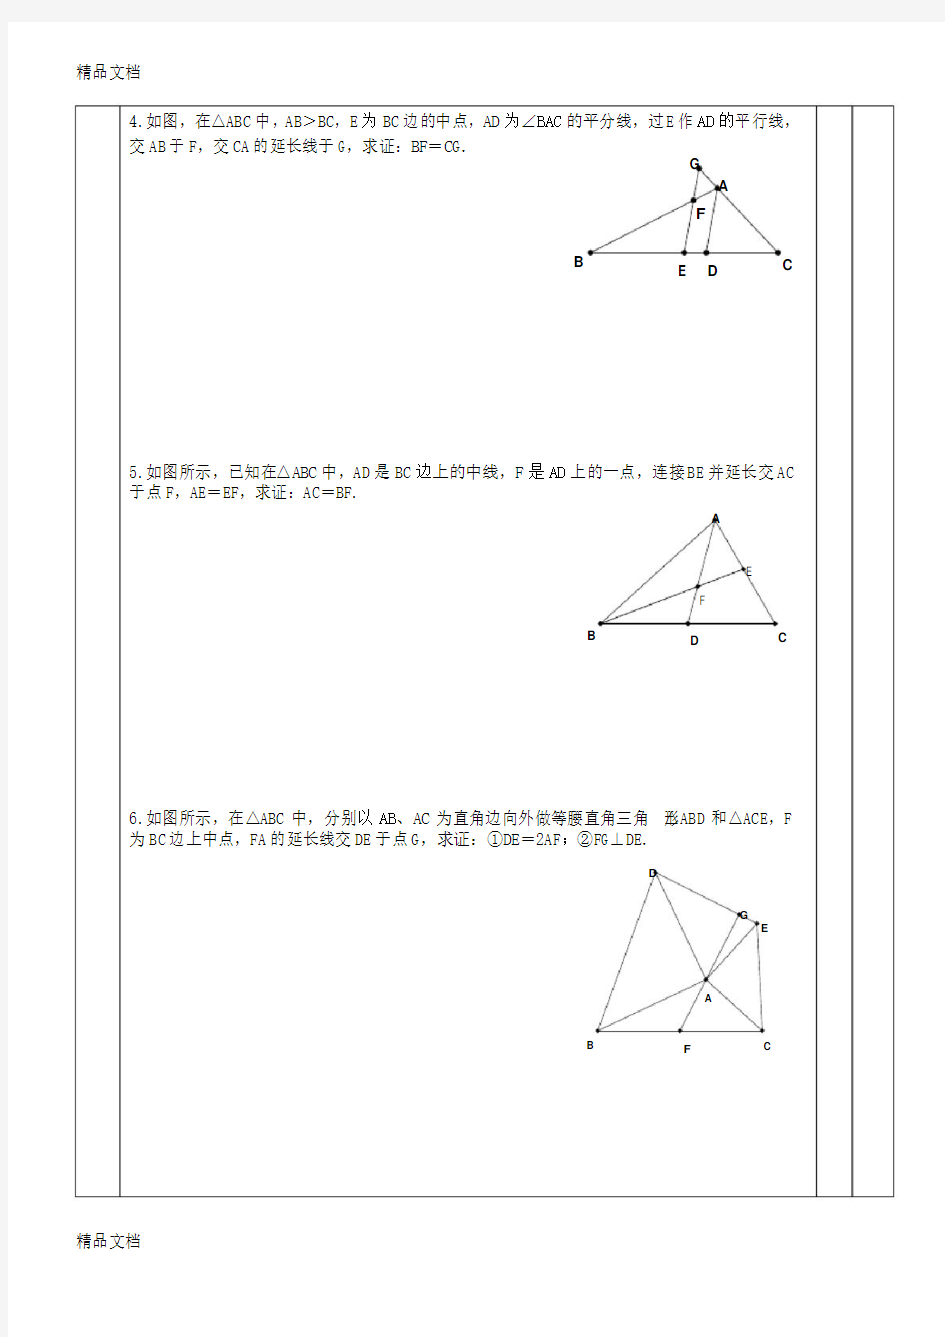 1初中数学《几何辅助线秘籍》中点模型的构造1(倍长中线法;构造中位线法)资料